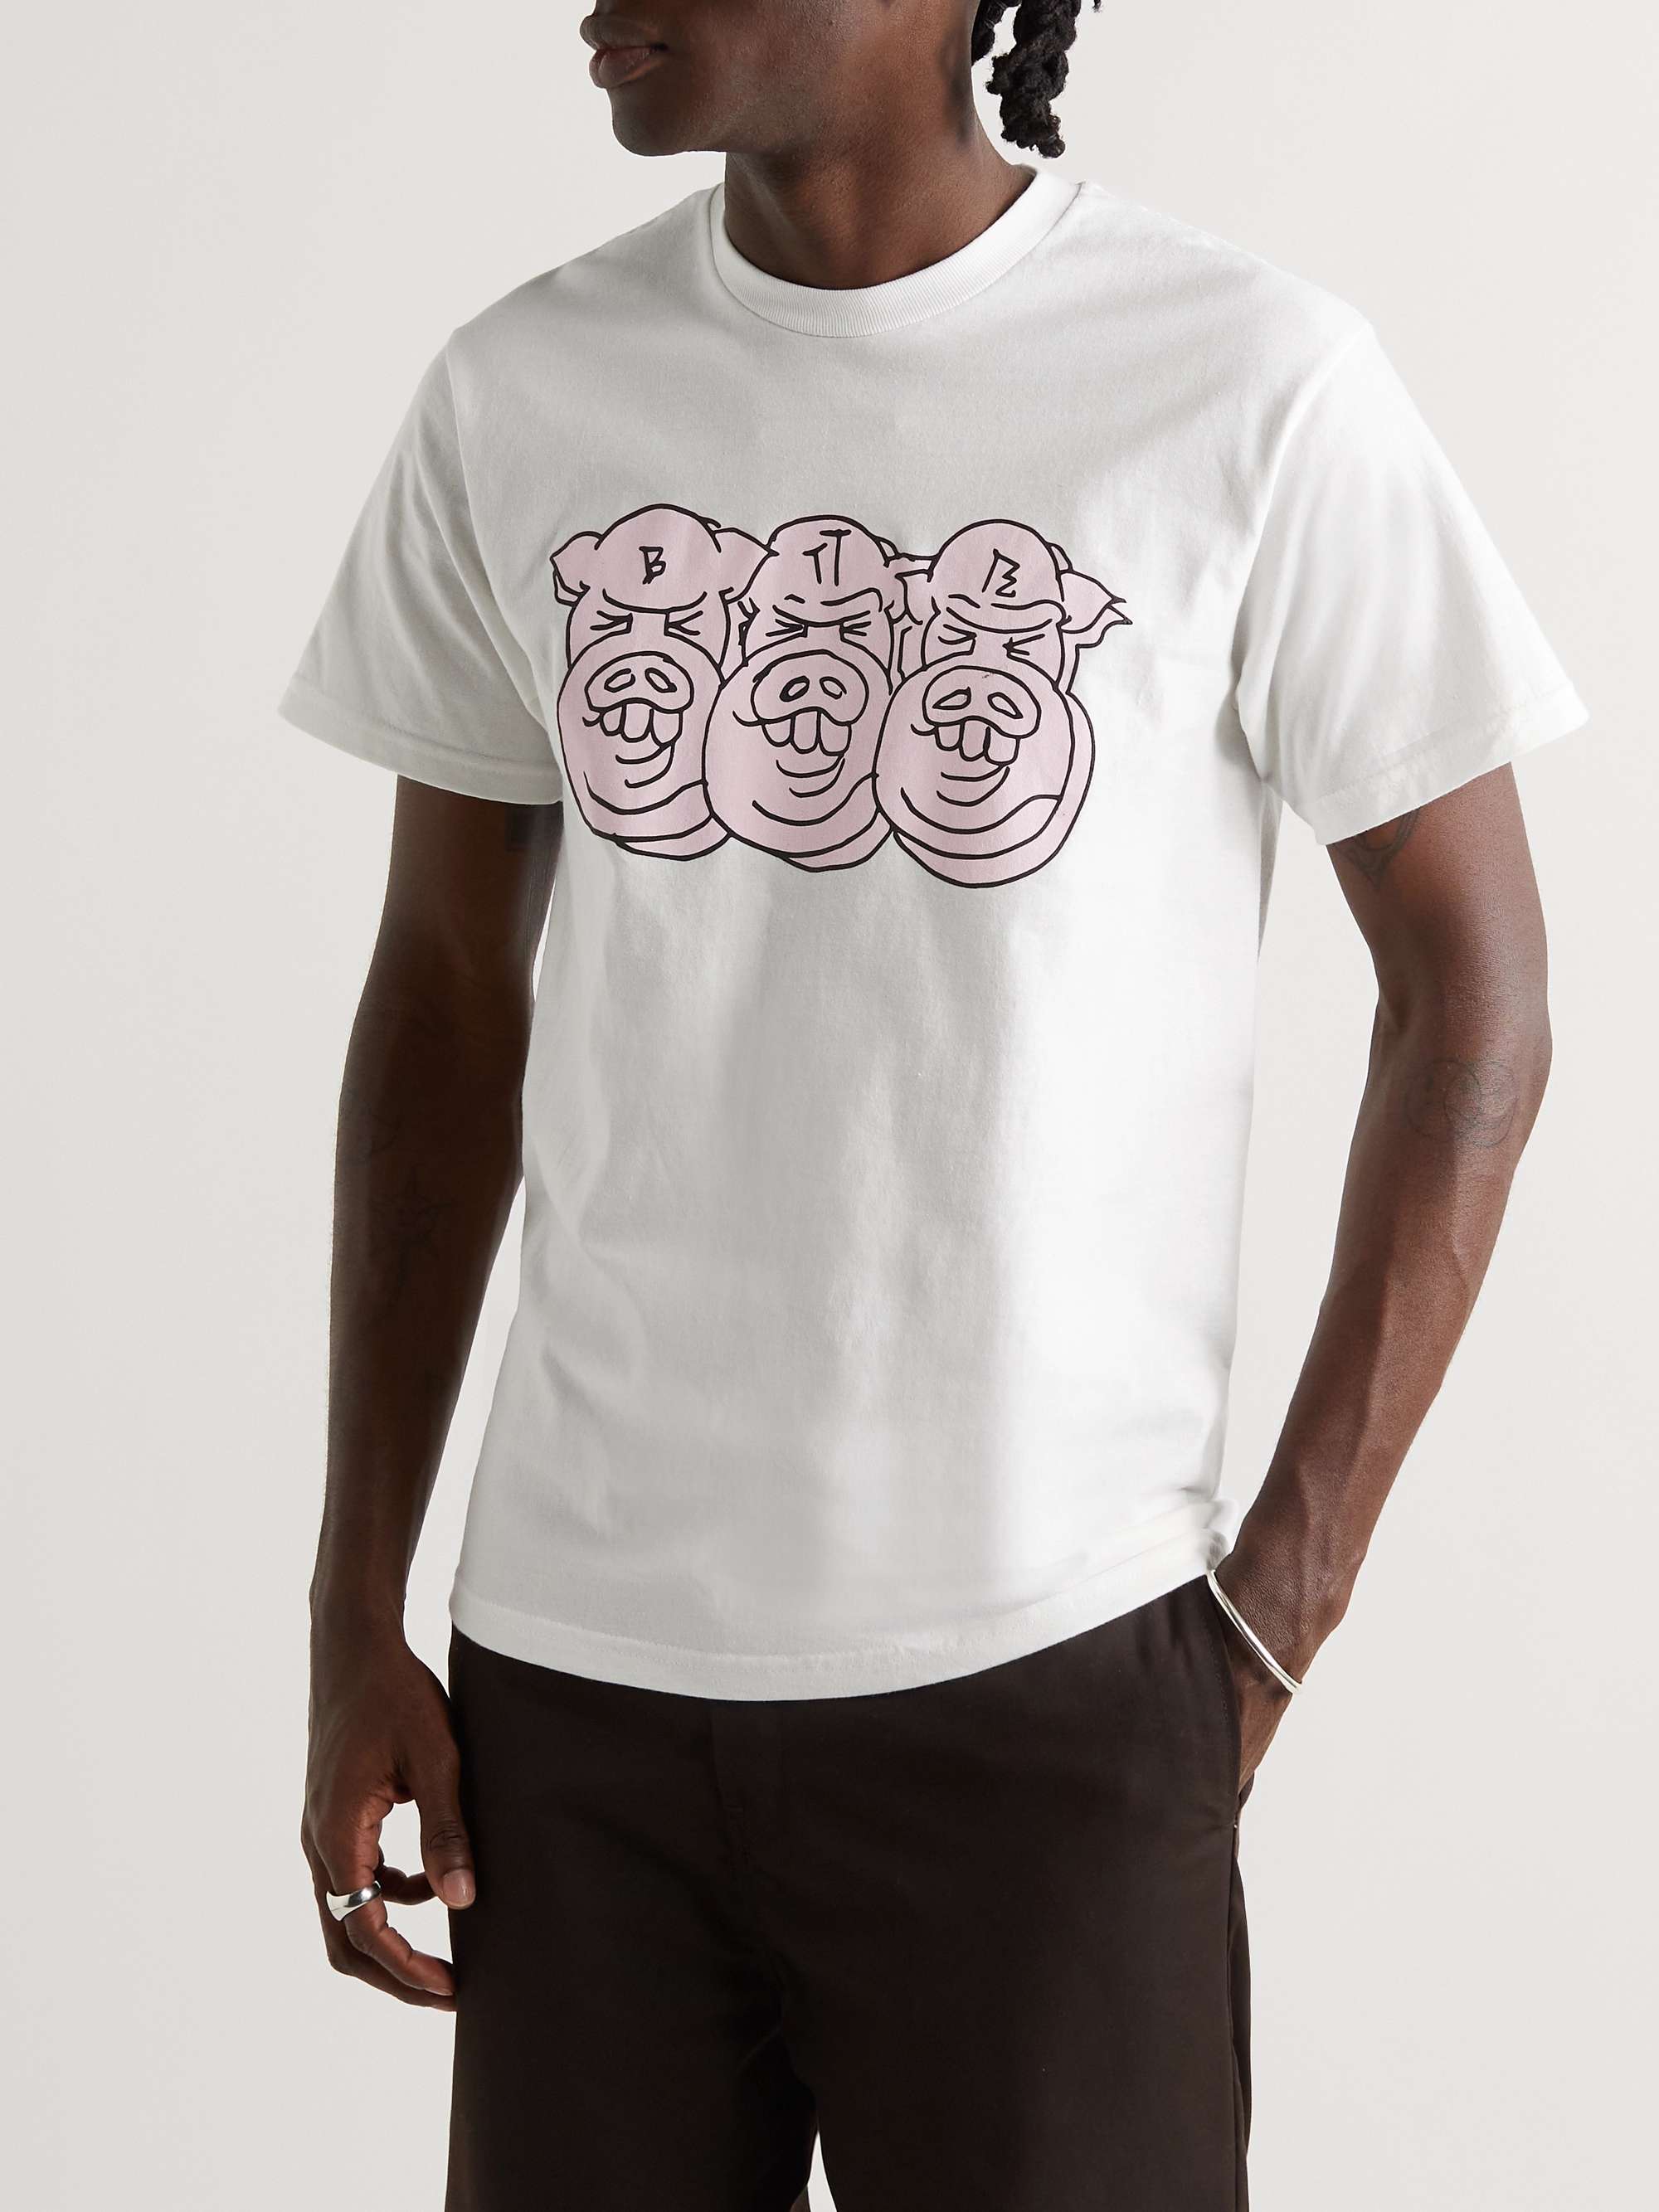 BETTER GIFT SHOP + JAFAR Printed Cotton-Jersey T-Shirt